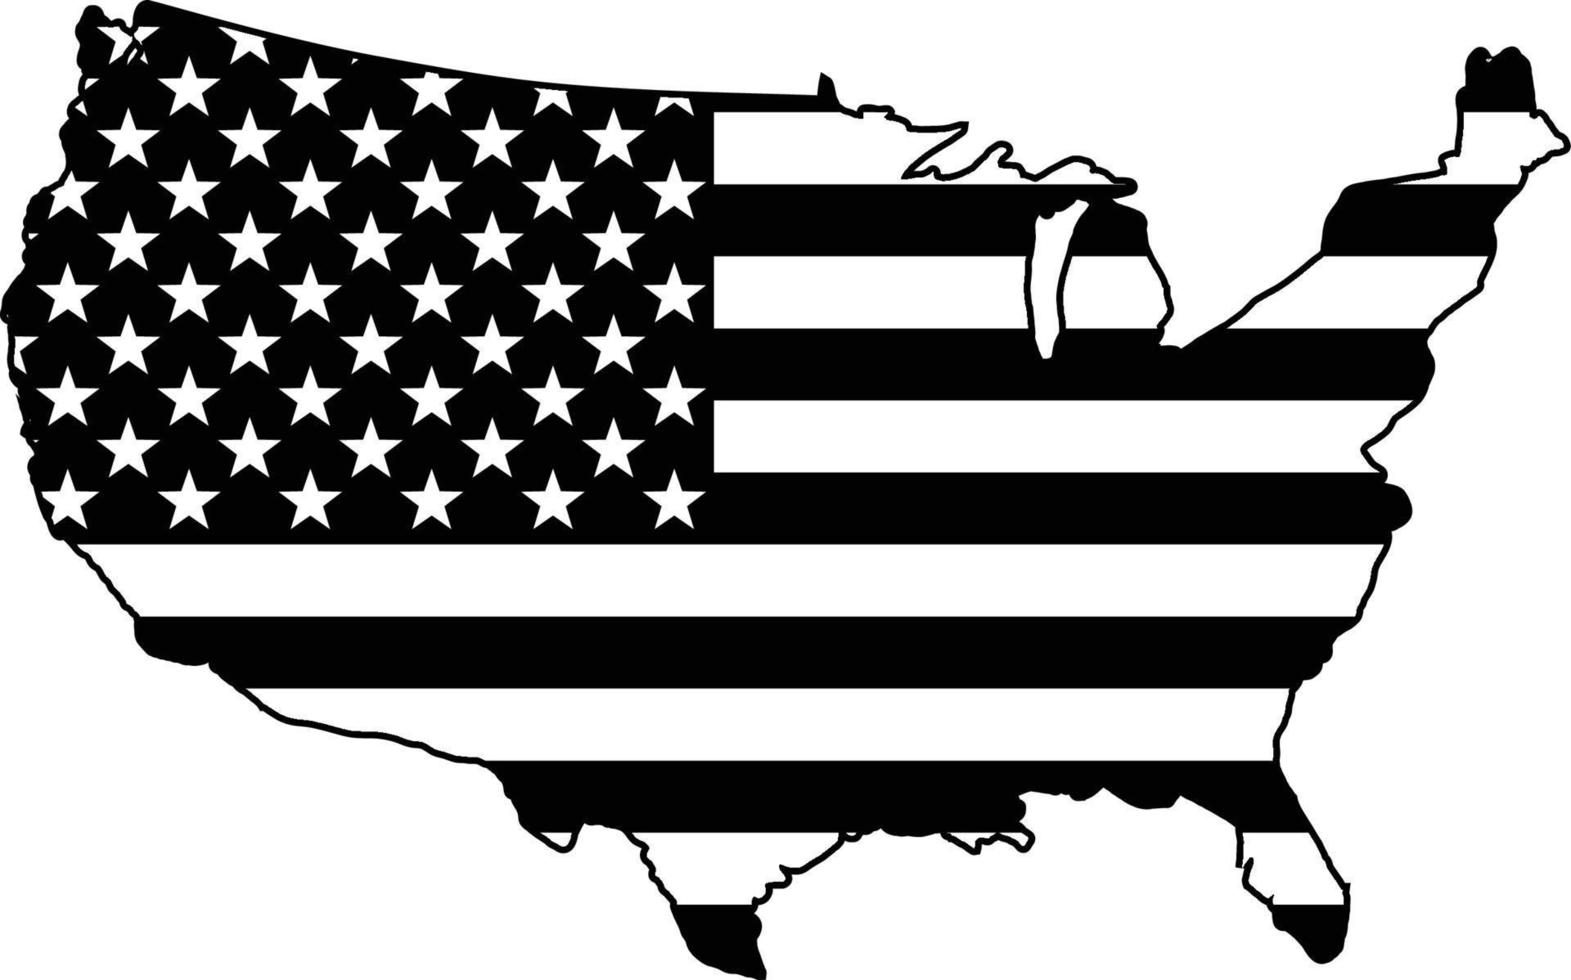 uni États drapeau carte Etats-Unis drapeau à l'intérieur Etats-Unis carte noir et blanc vecteur illustration agrafe art